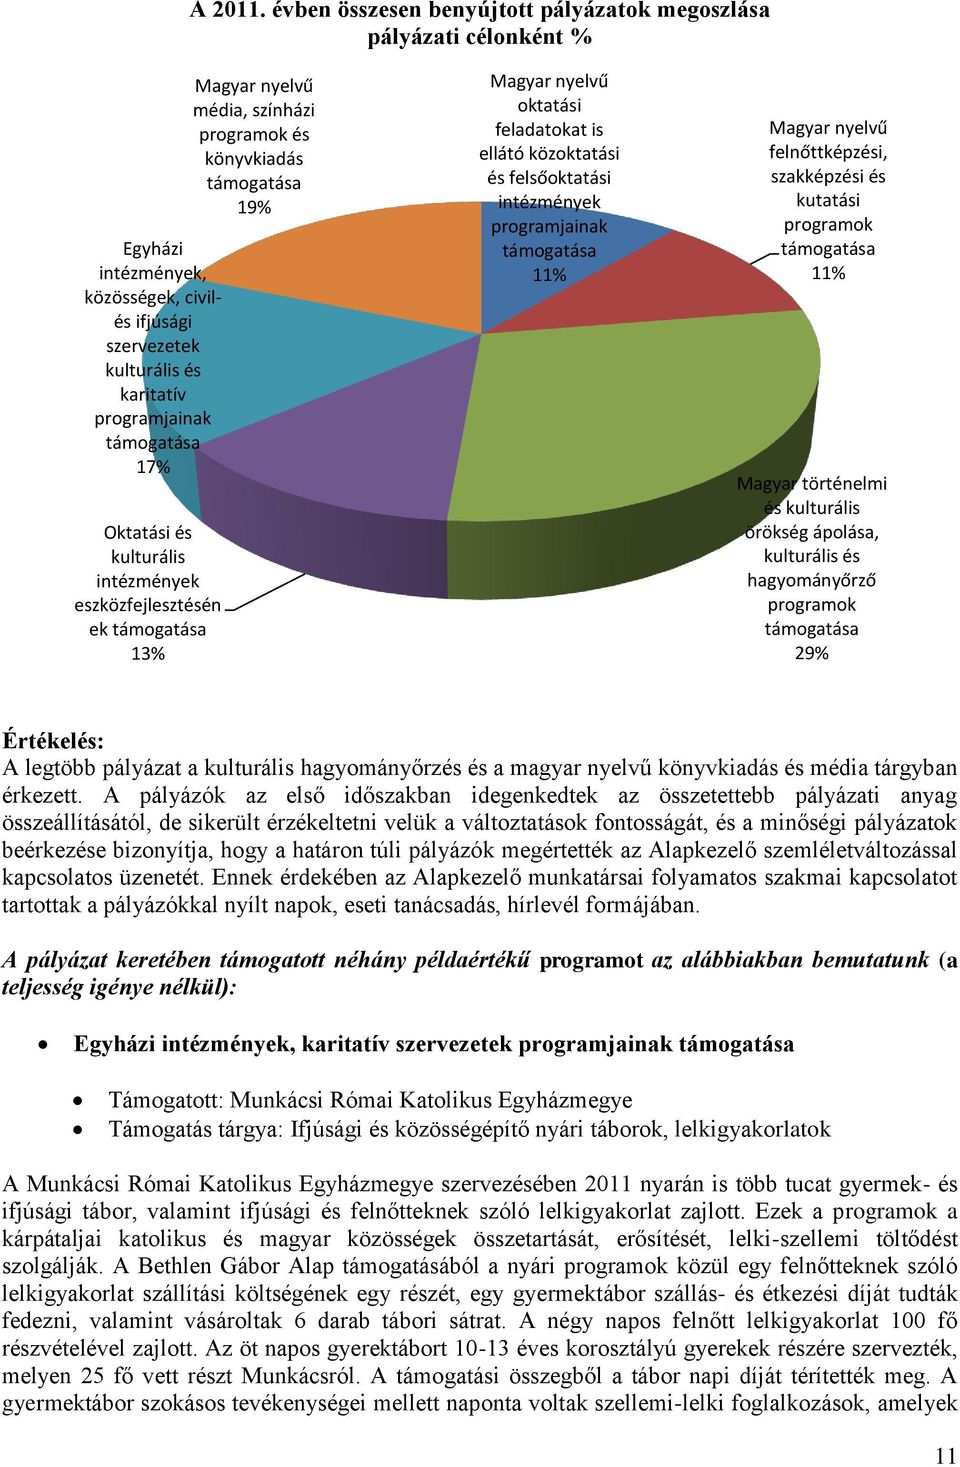 kulturális intézmények eszközfejlesztésén ek támogatása 13% Magyar nyelvű média, színházi programok és könyvkiadás támogatása 19% Magyar nyelvű oktatási feladatokat is ellátó közoktatási és